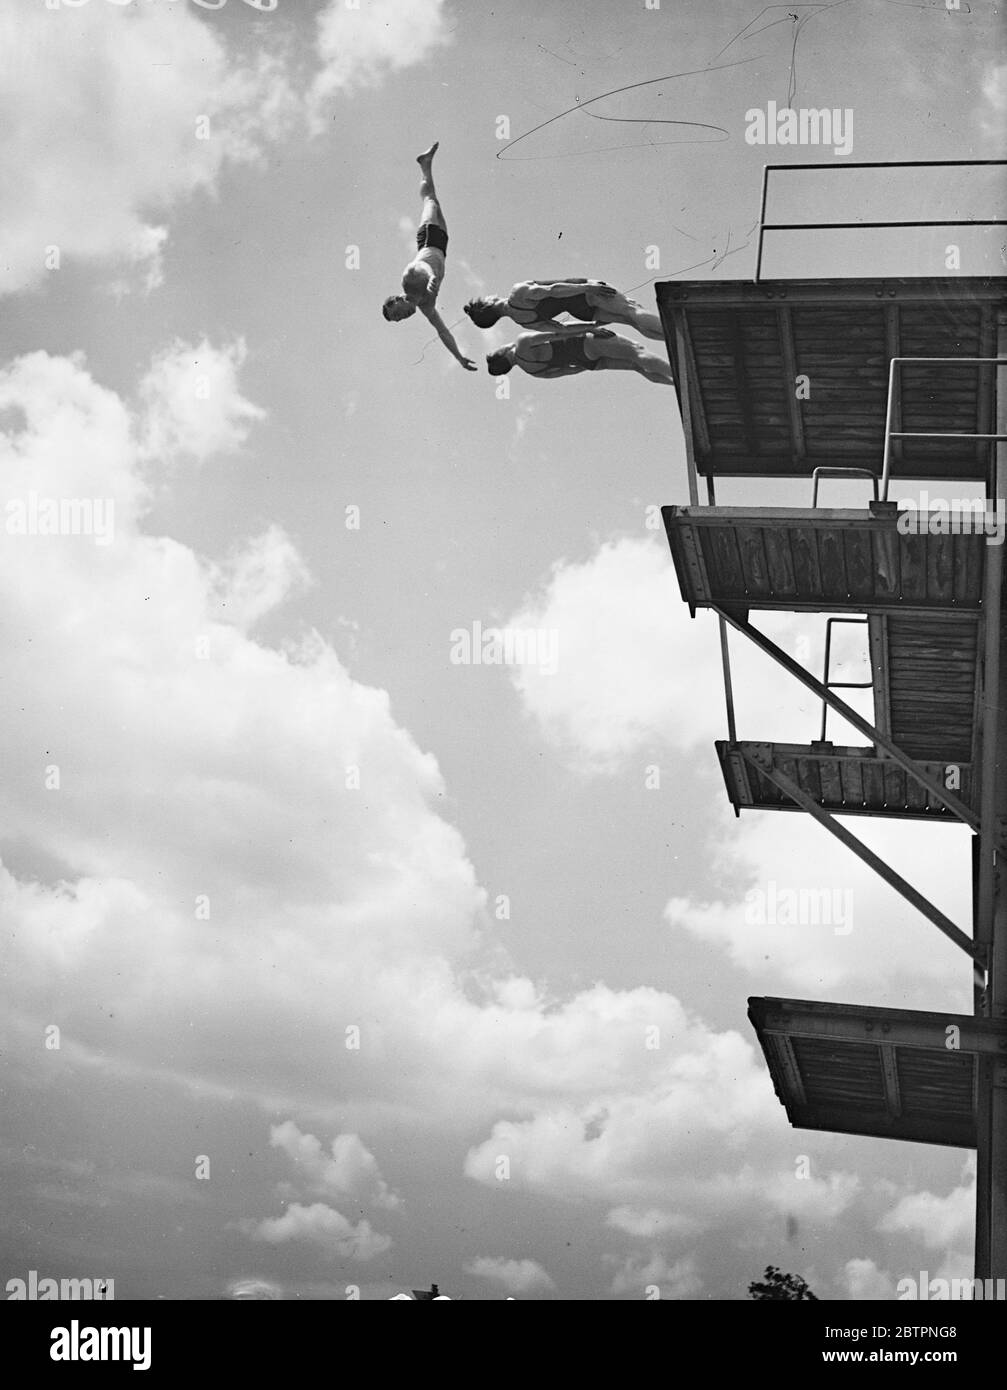 Visualizzazione nel cielo. I membri del Lucratics Diving Club hanno esposto il loro posto alla piscina Wood Green di Londra. Spettacoli fotografici, i subacquei hanno fotografato l'istante in cui hanno lasciato la tavola alta in una spettacolare tripla immersione. 3 luglio 1937 Foto Stock